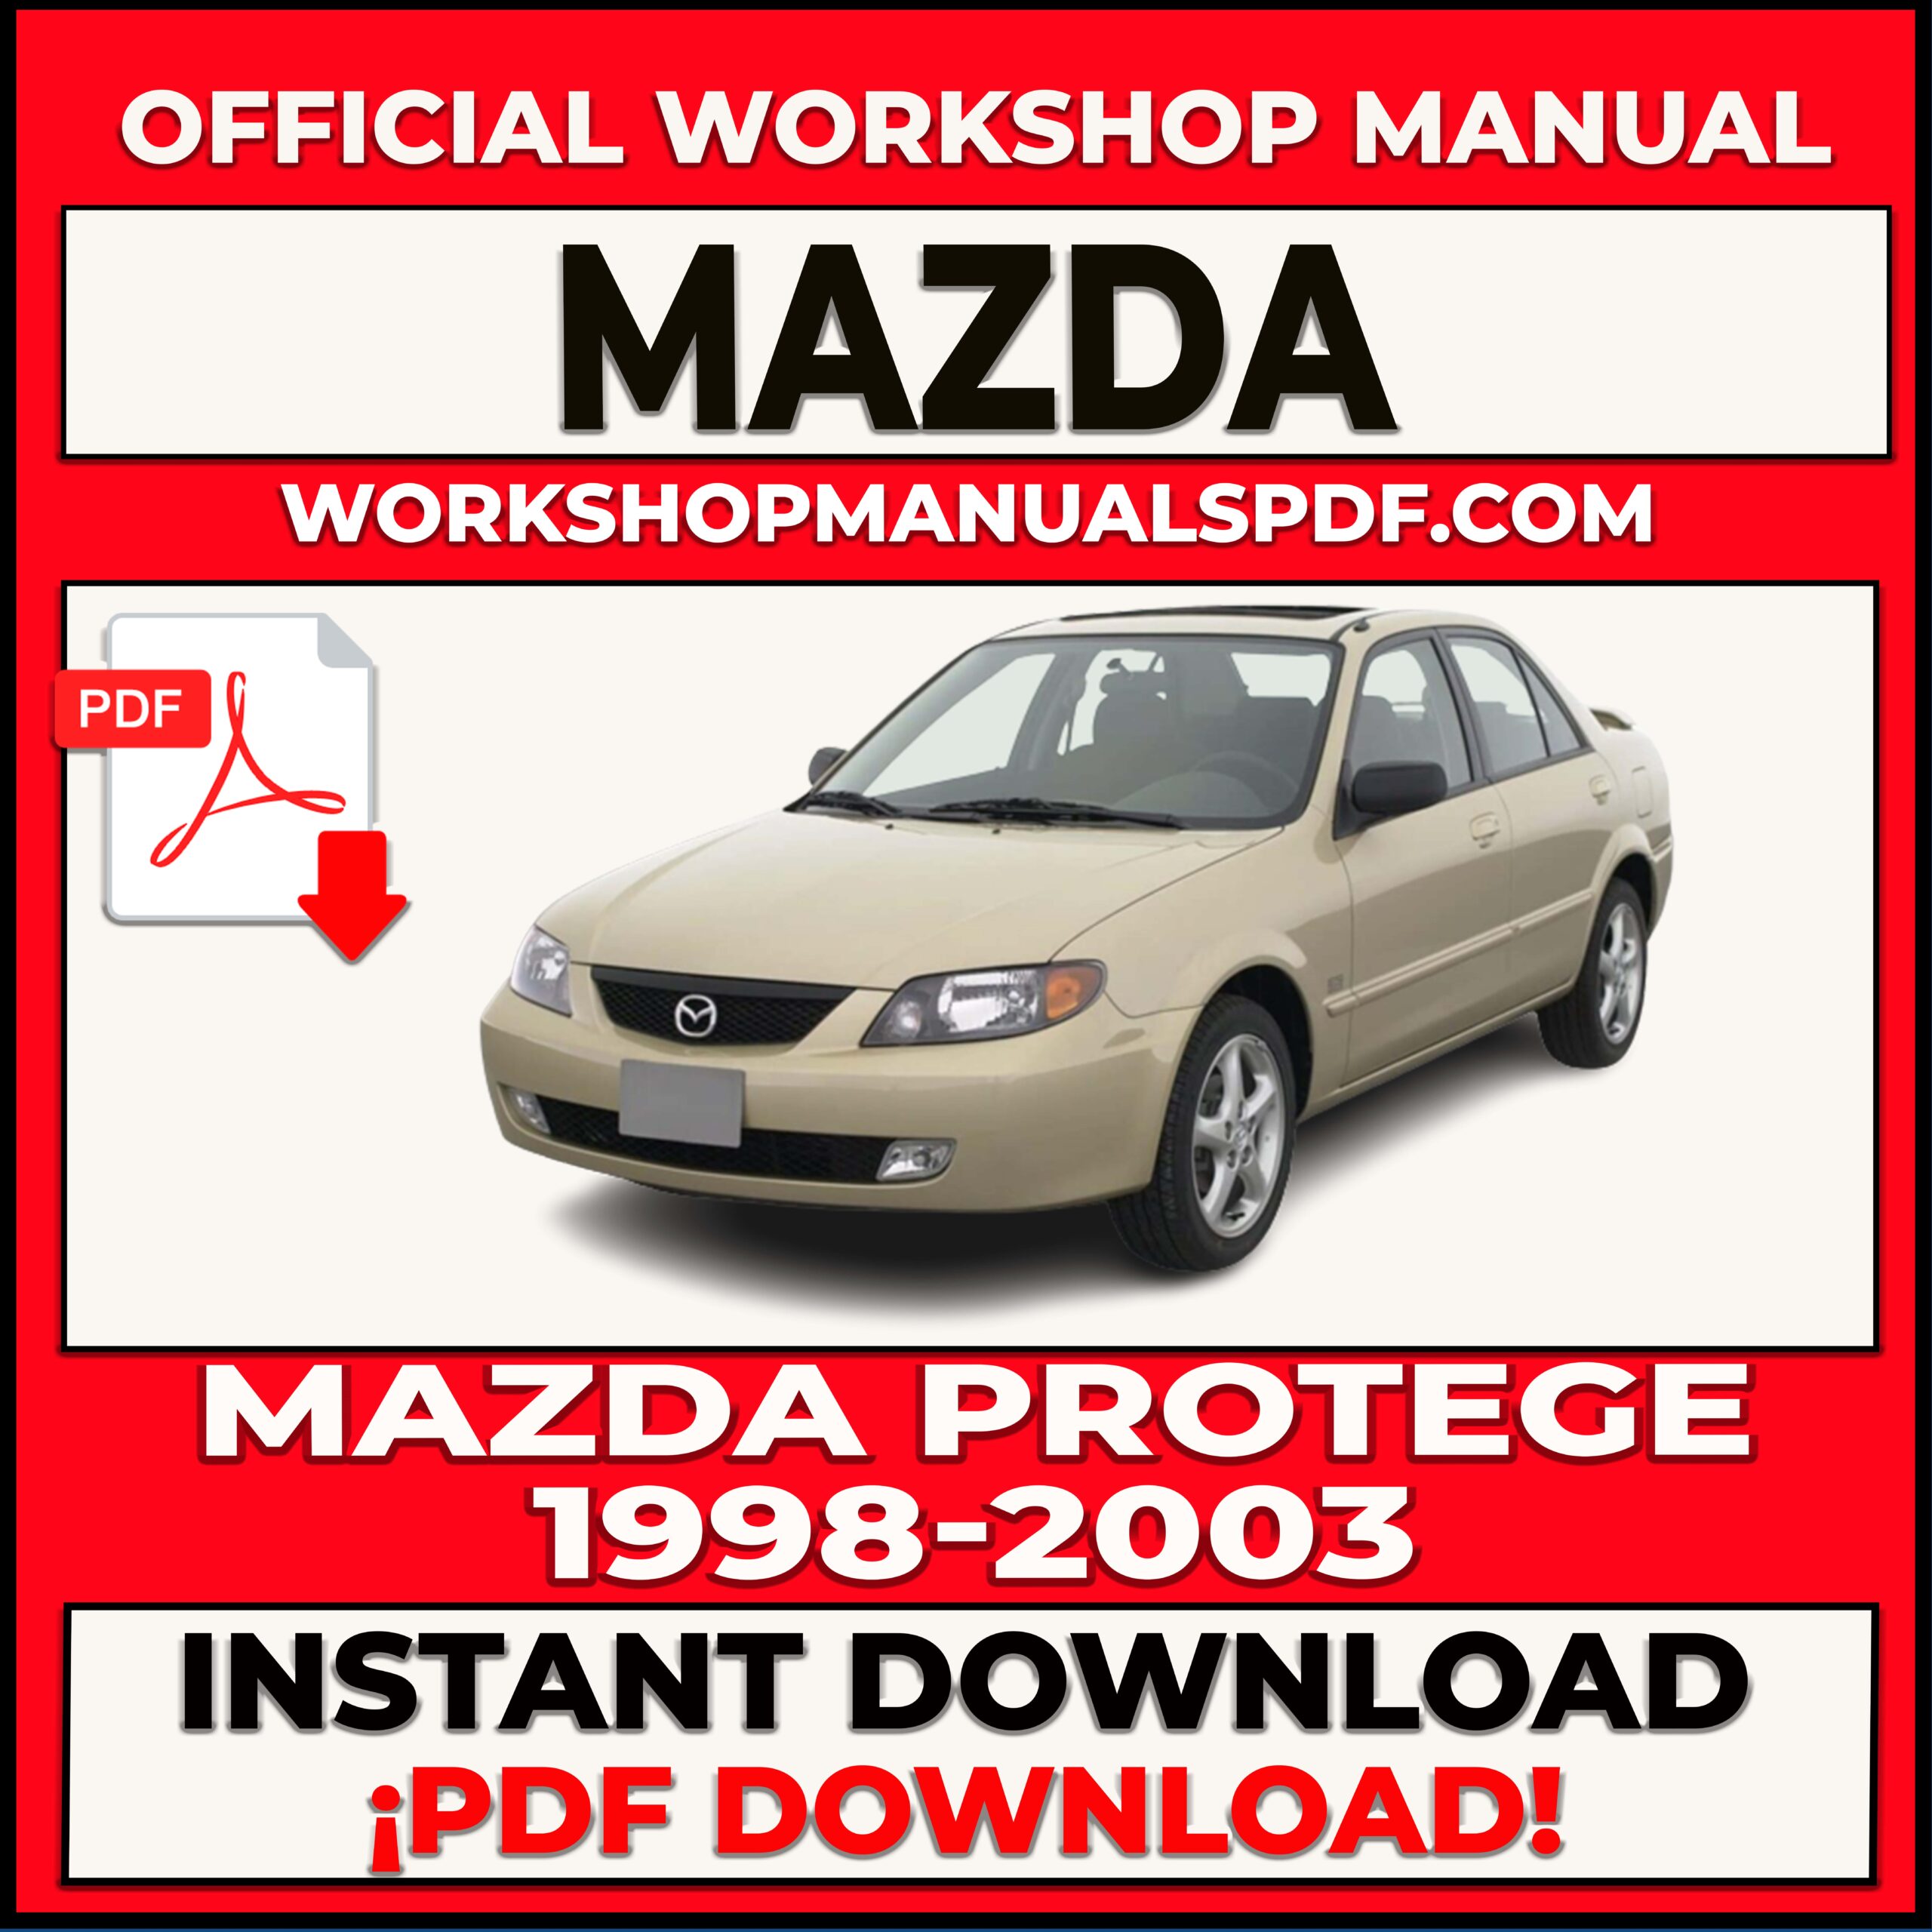 Mazda Protege 1998-2003 Workshop Repair Manual